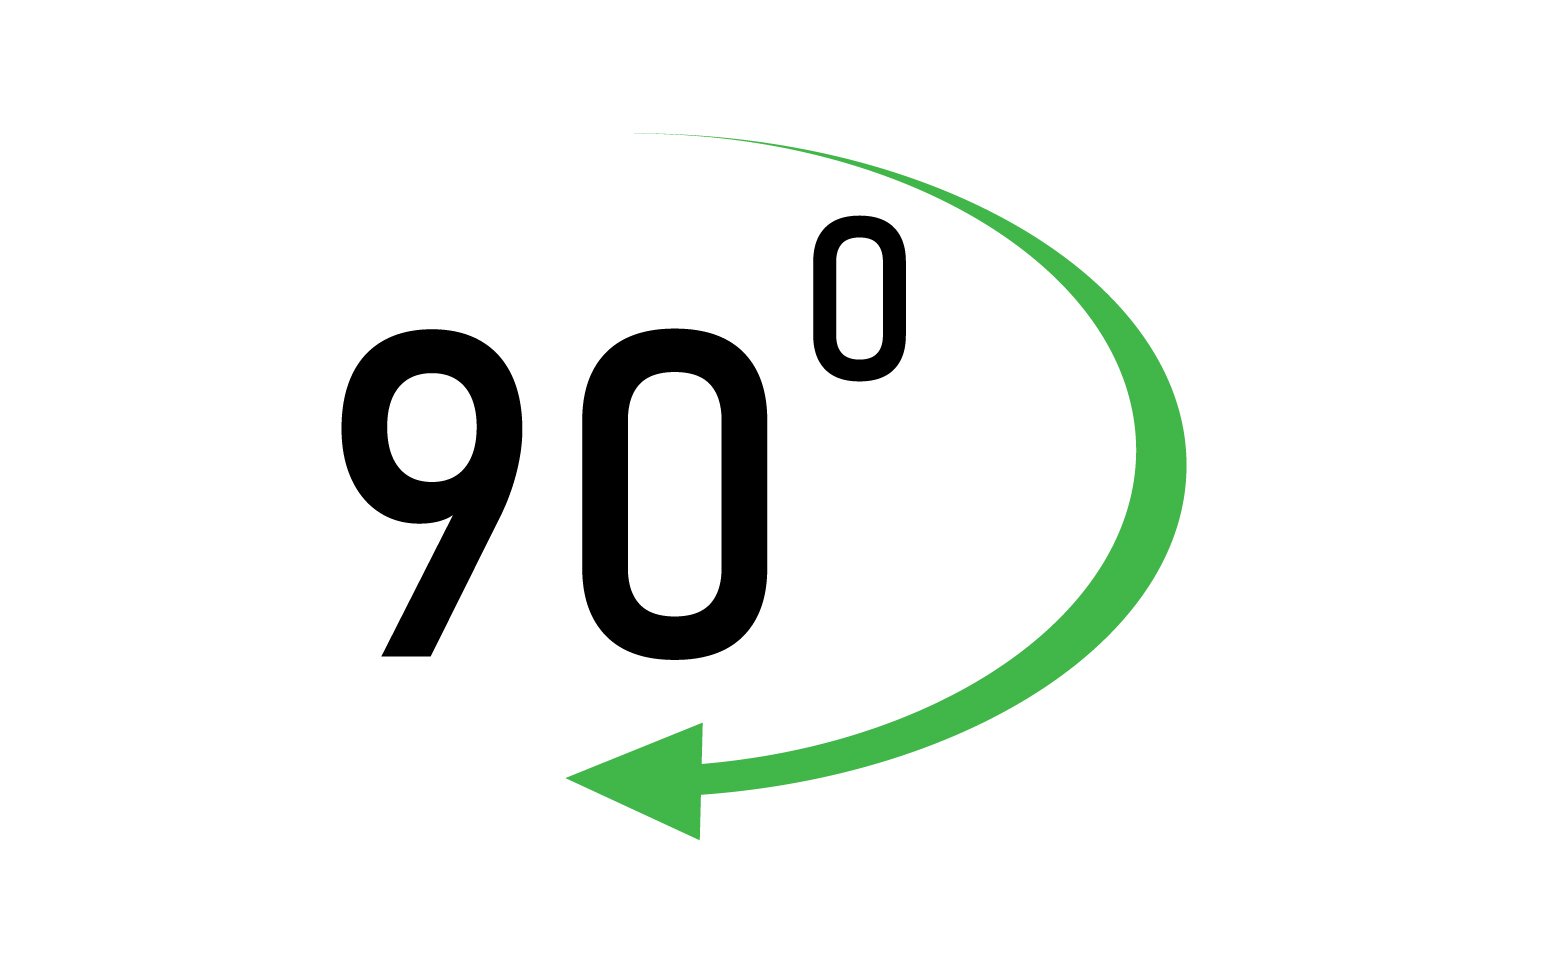 90 degree angle rotation icon symbol logo v11